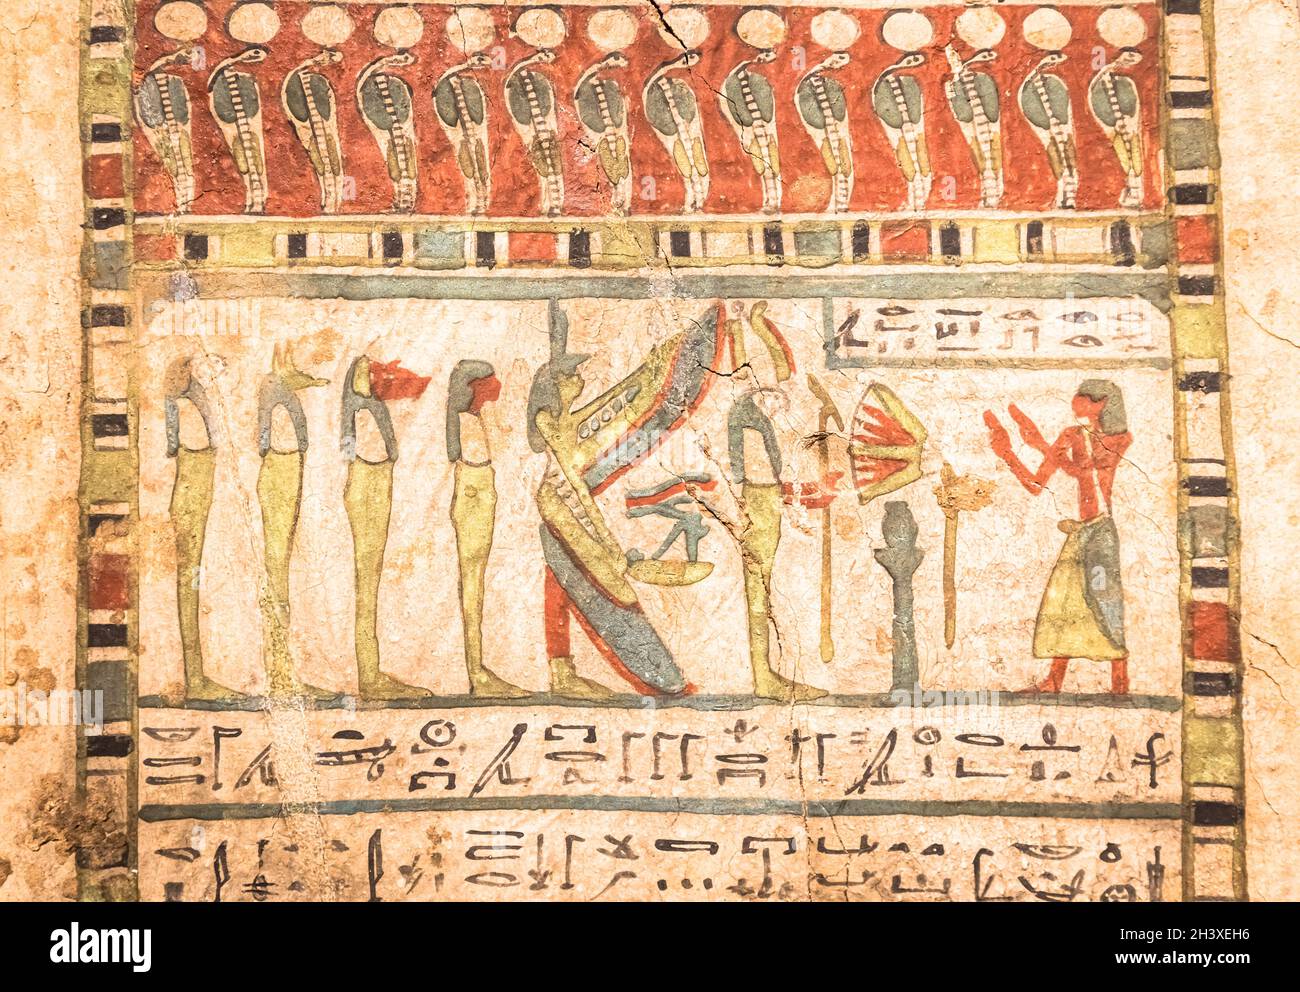 Archeologia egiziana. Antico geroglifico, ca. 580 a.C., con Iside e i quattro figli di Horus Foto Stock